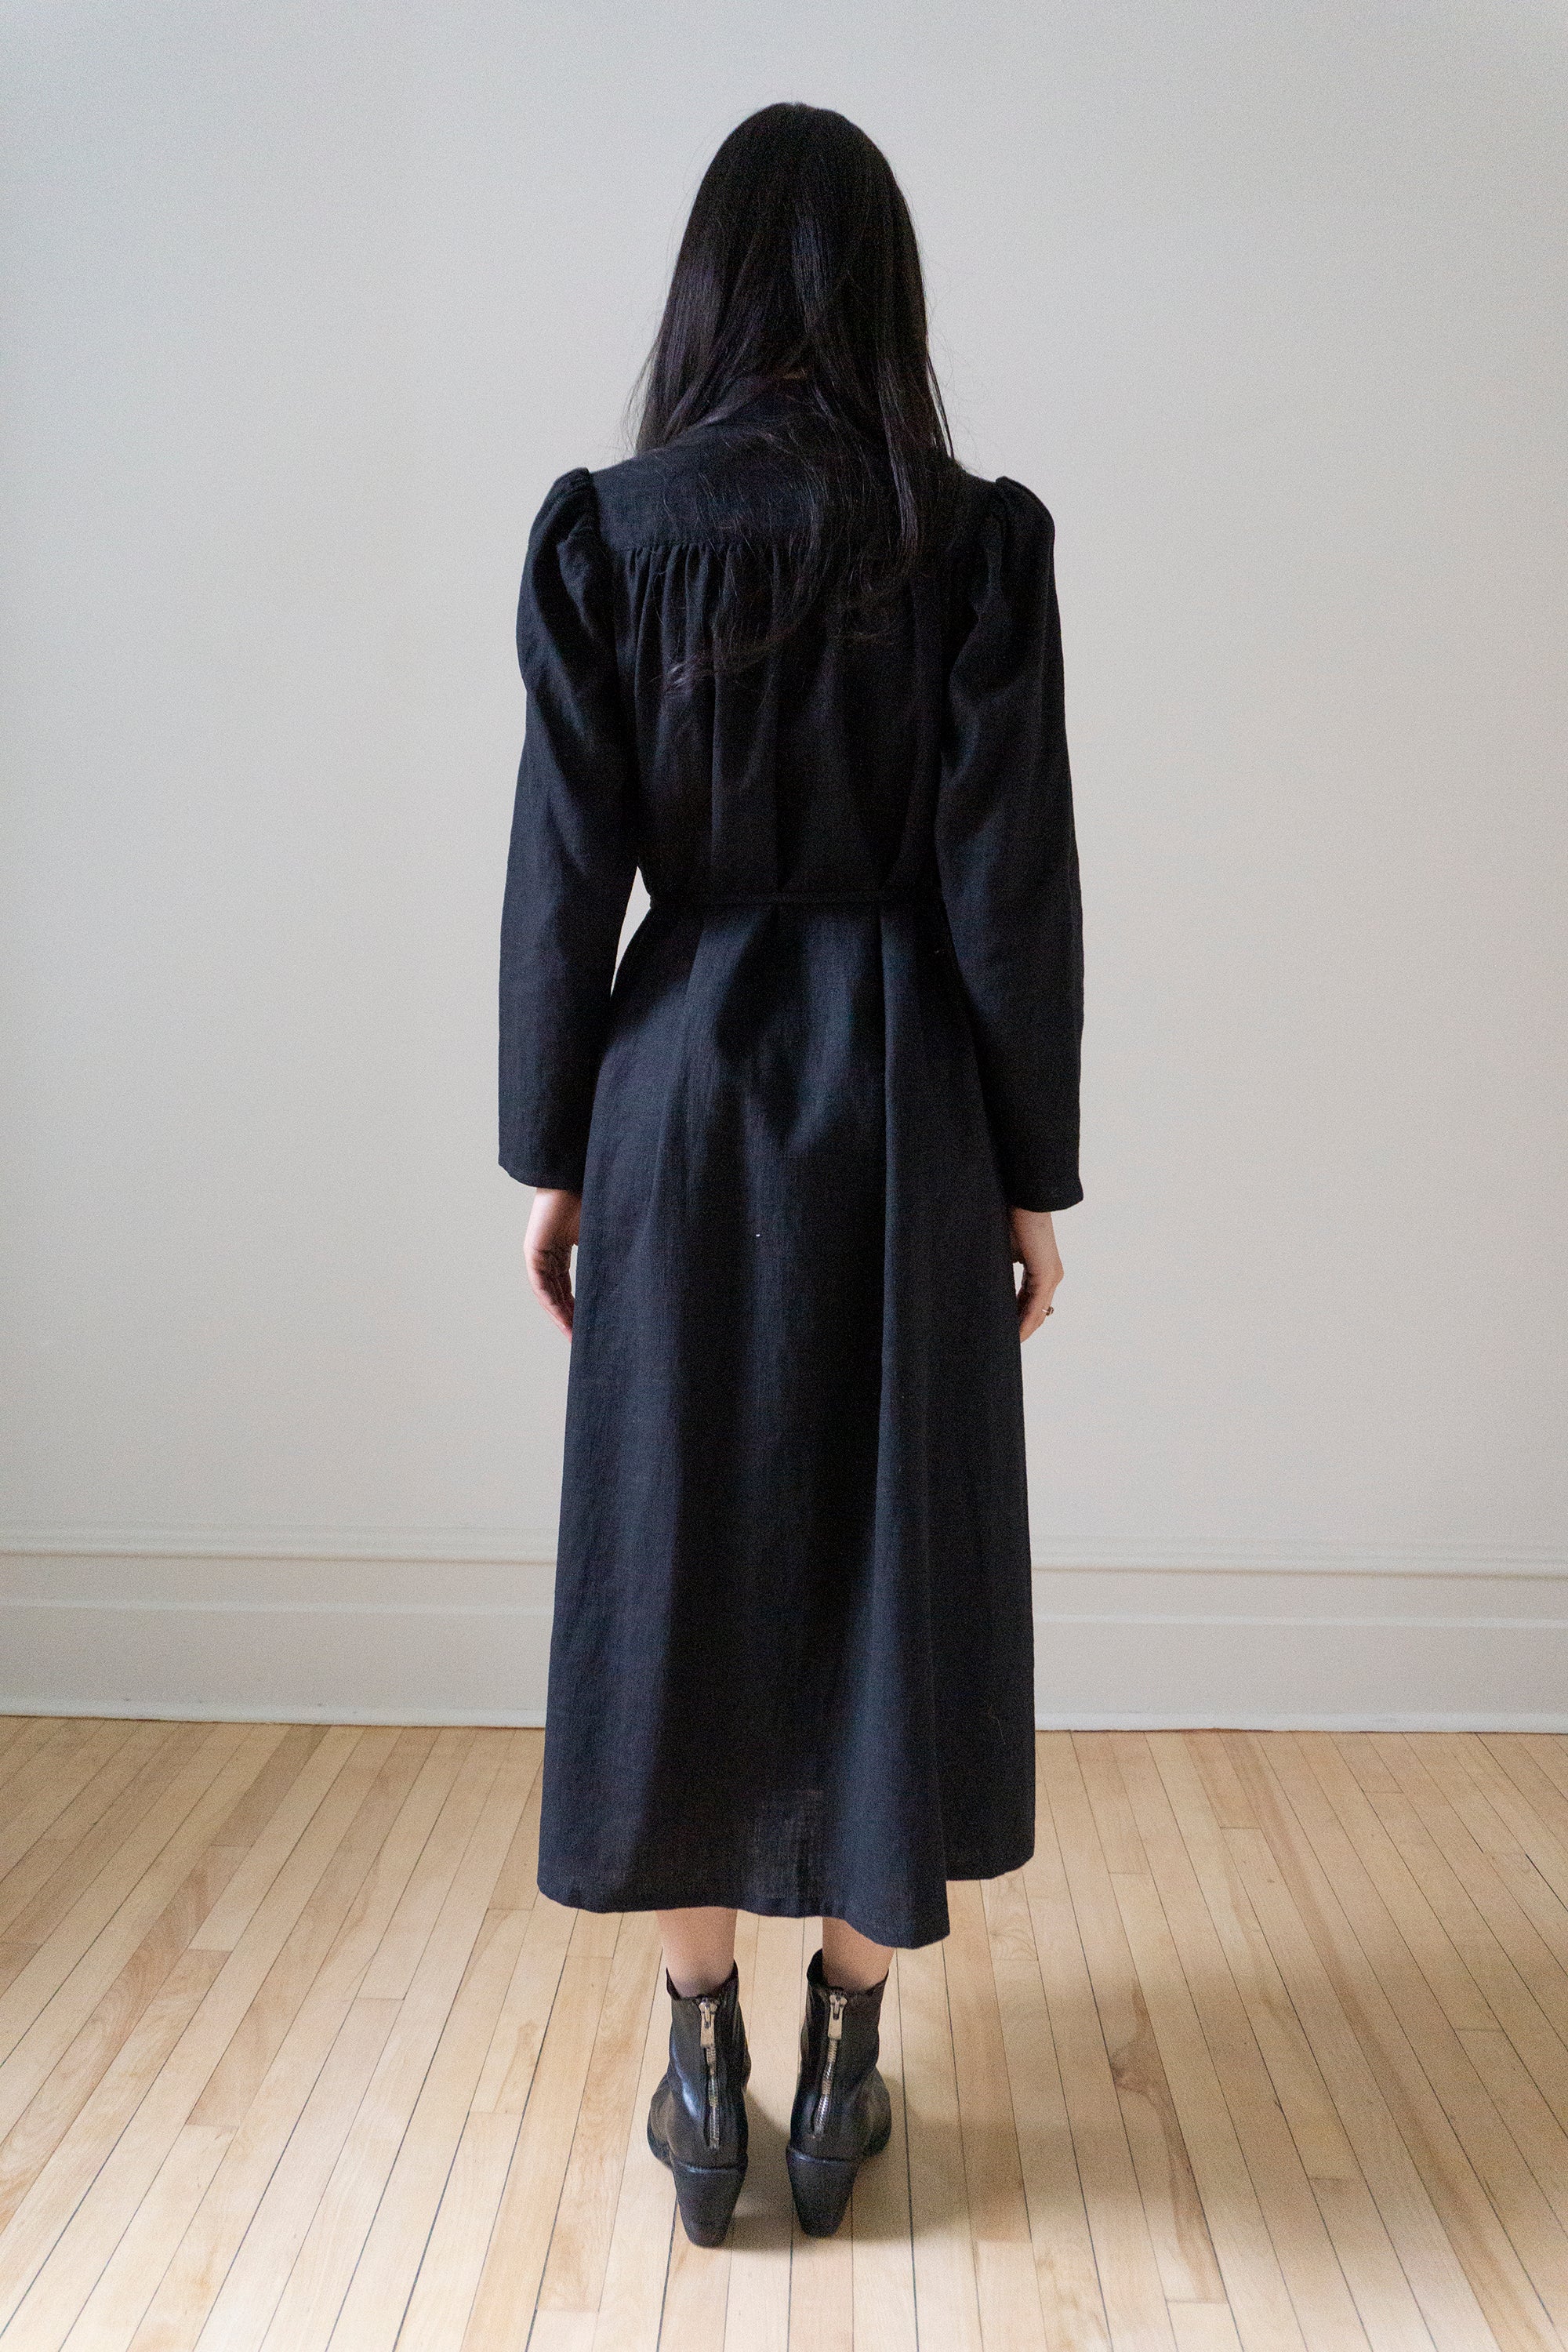 Rowan Linen Dress - Black